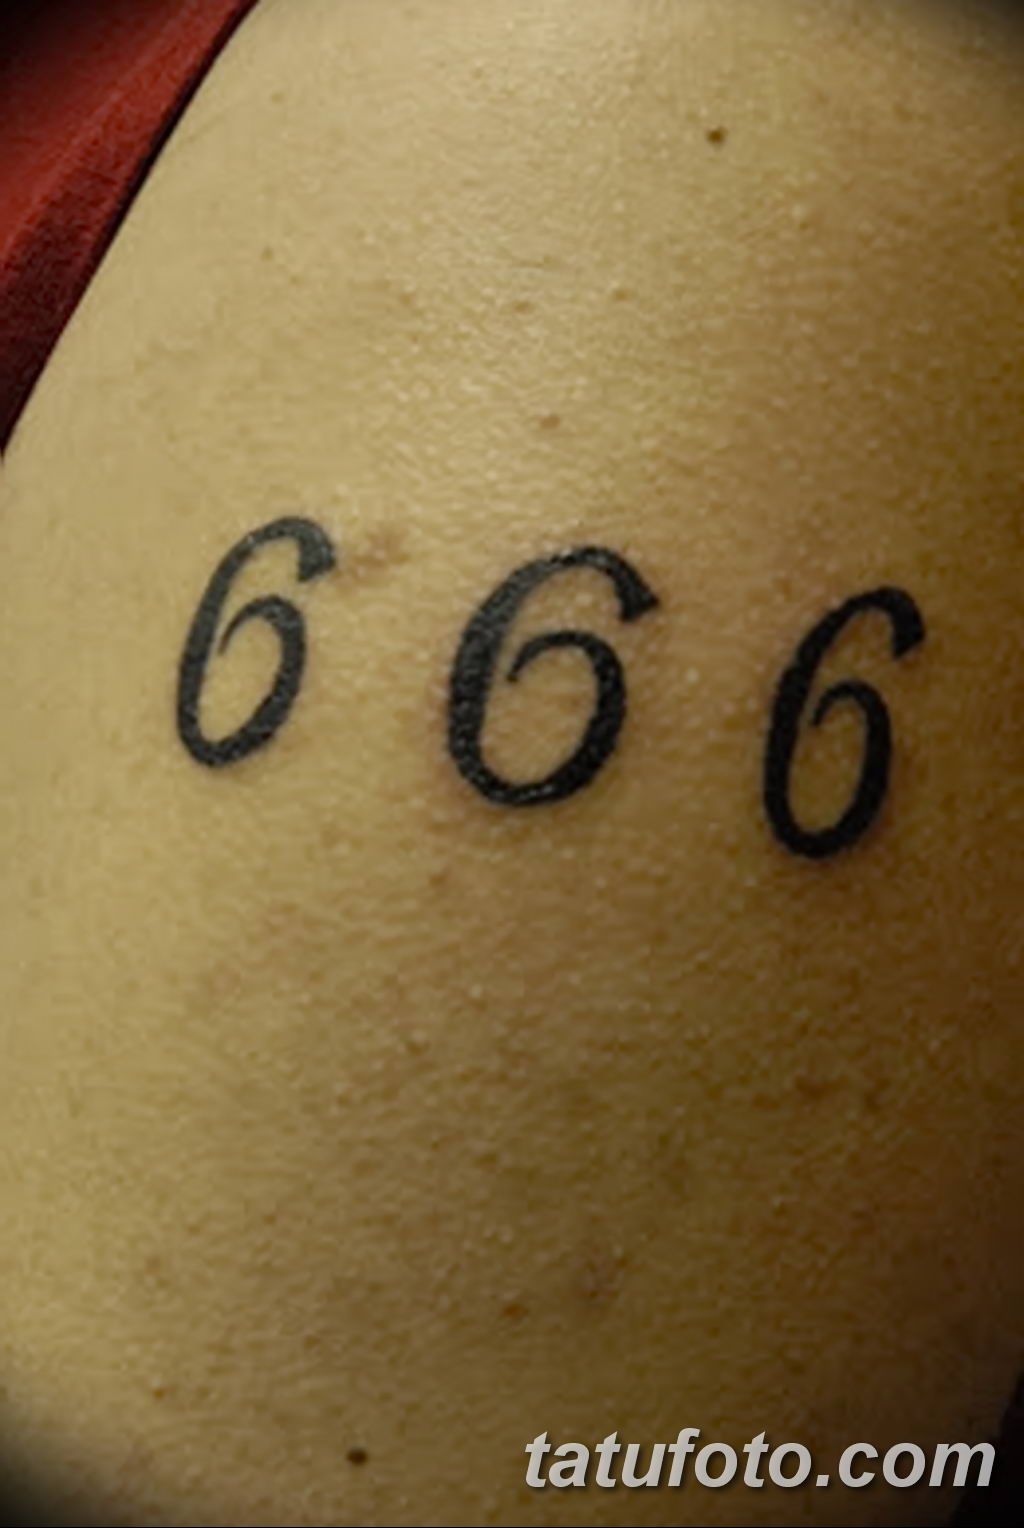 Тату 666 на руке